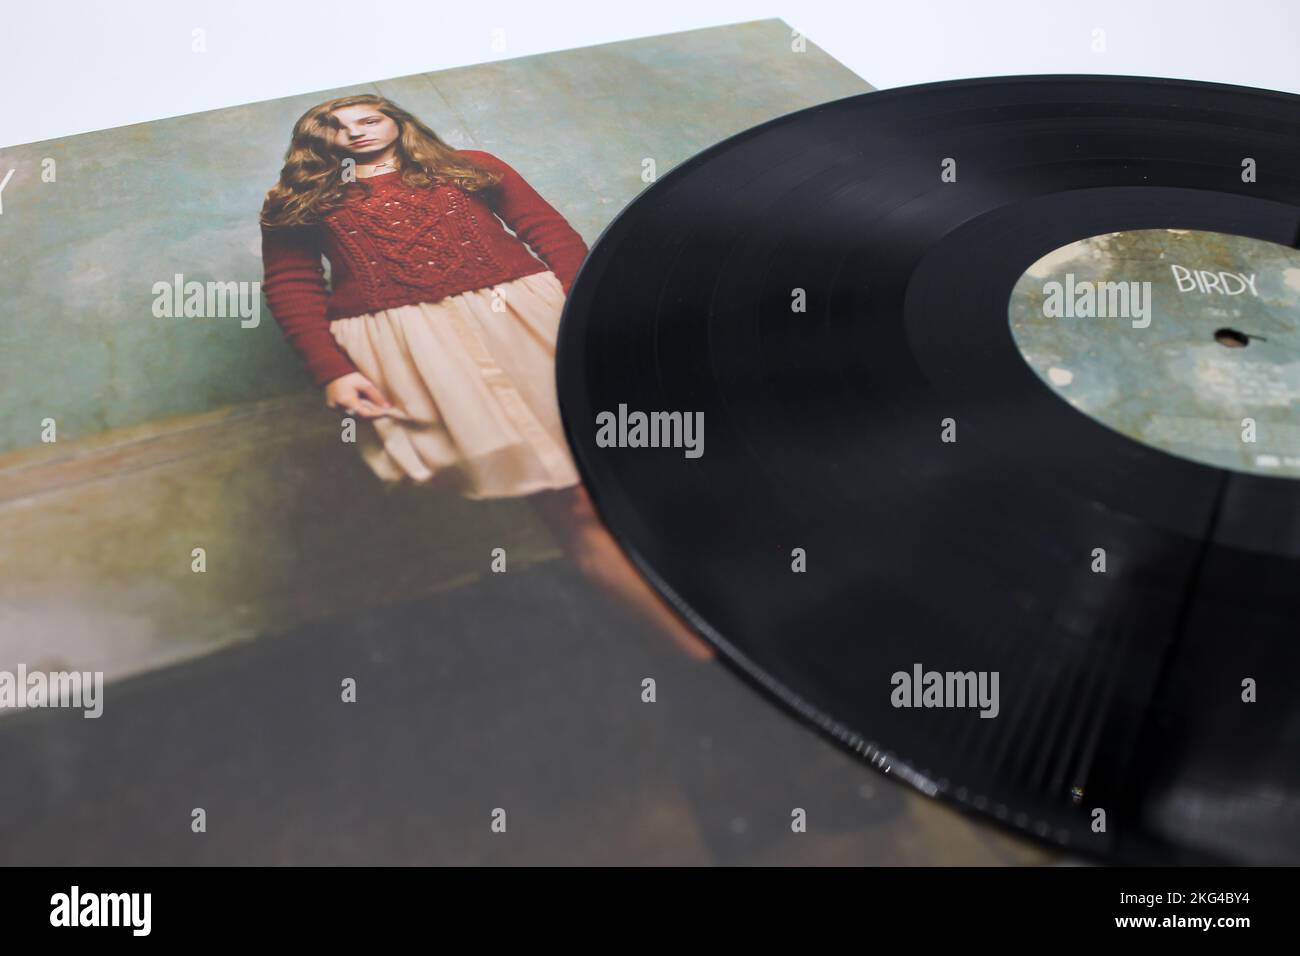 Englischer Sänger und Songwriter Birdy, Musikalbum auf Schallplatten-LP-Disc. Der Datensatz hat einen eigenen Titel. Sie singt Indie-Folk-Musik. Stockfoto